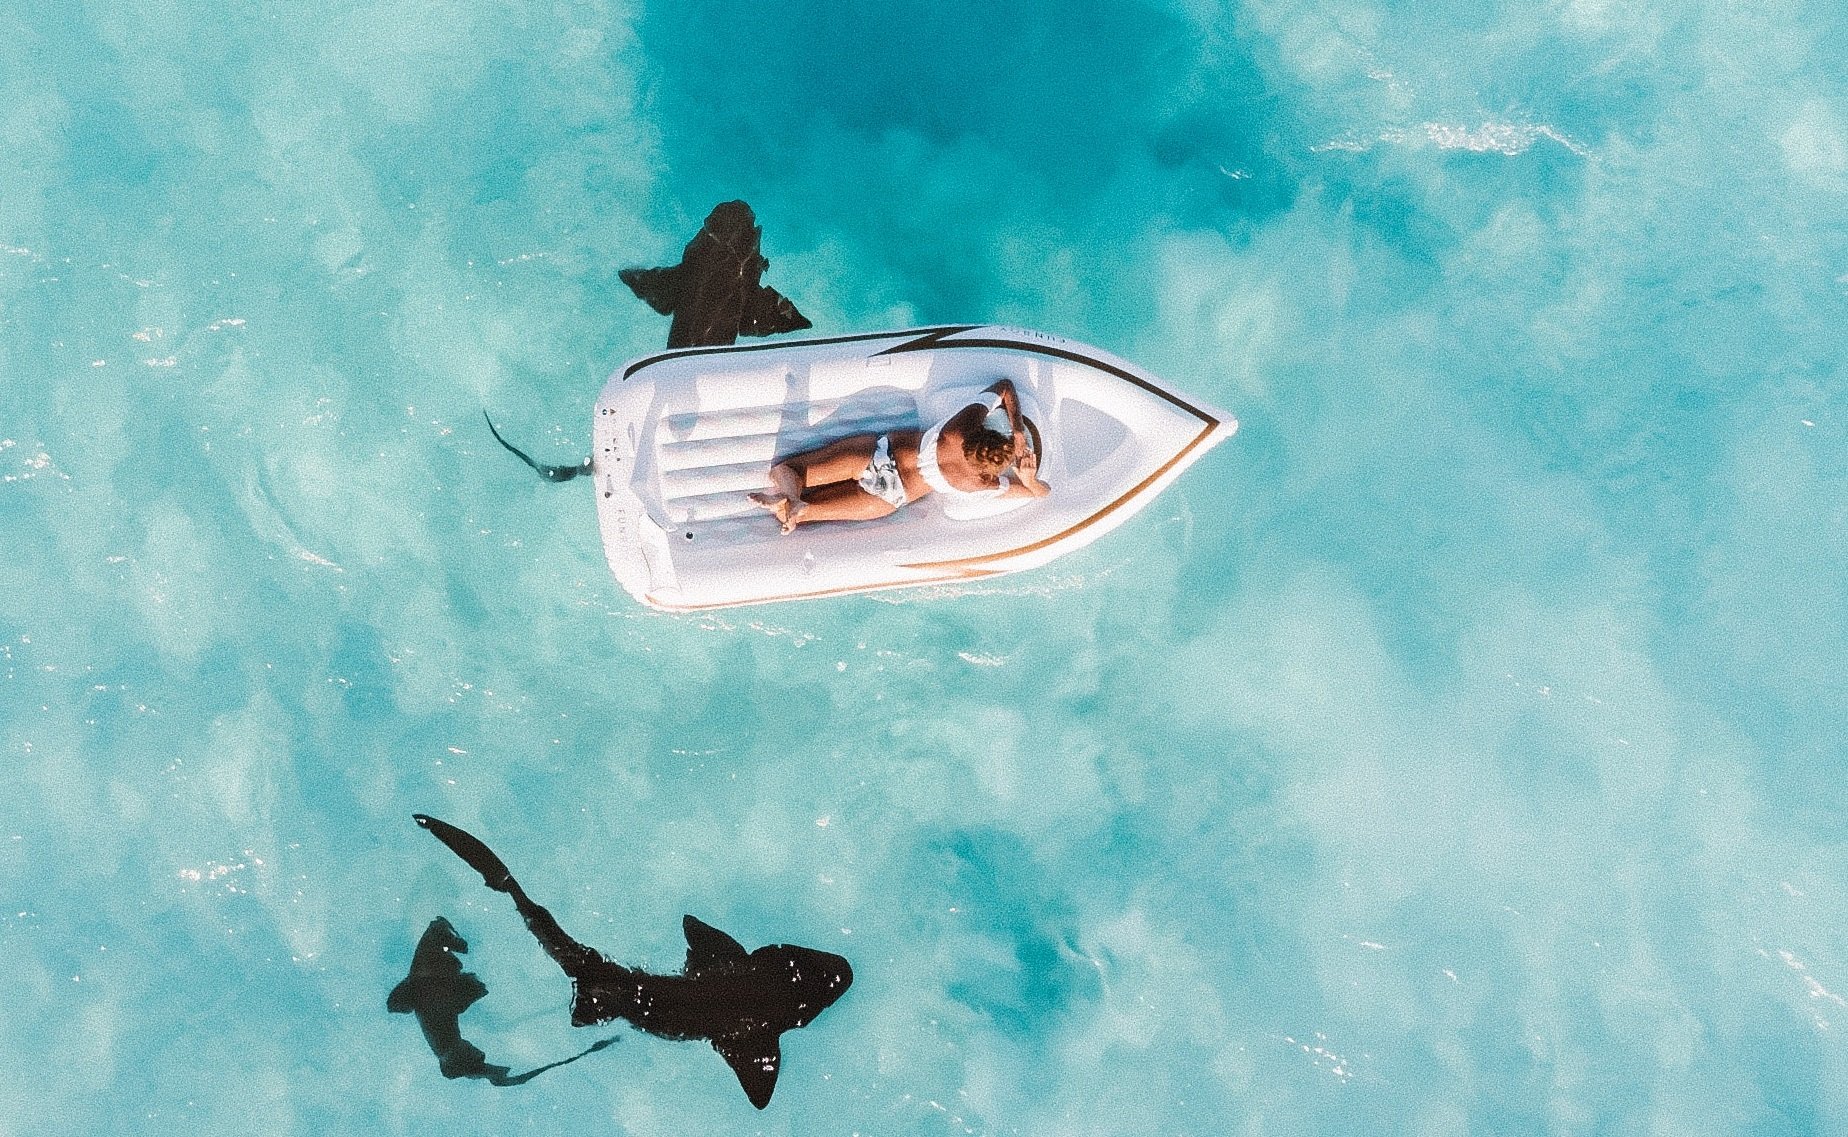 requins2.jpg?resize=1200,630 - Un père de famille filmait ses enfants avec son drone et repère un requin en train de s'approcher..